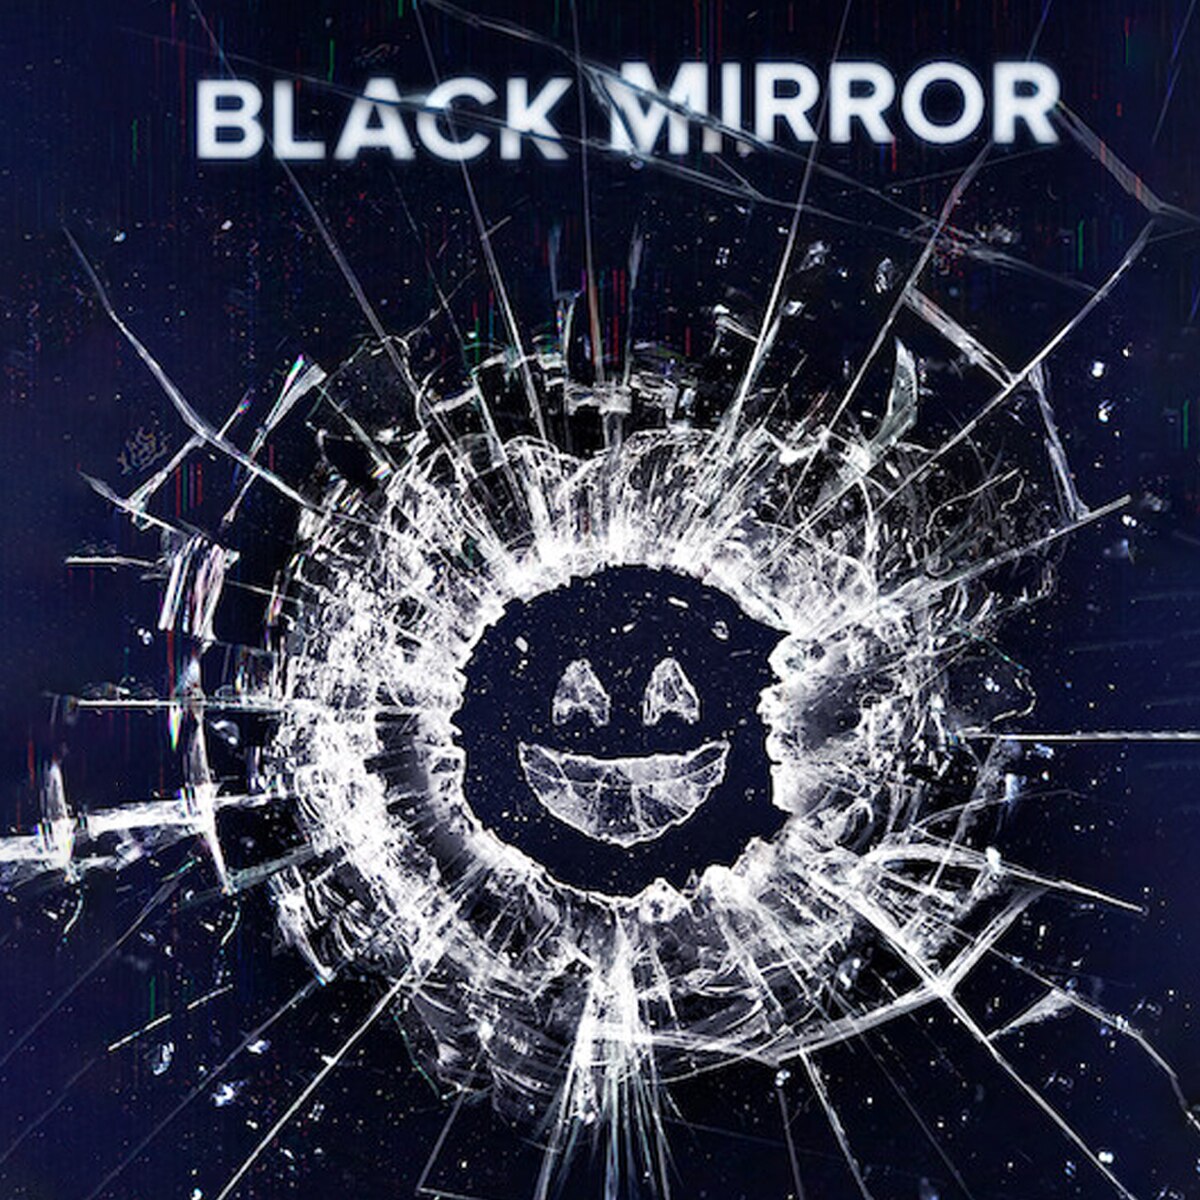 Black Mirror, Netflix